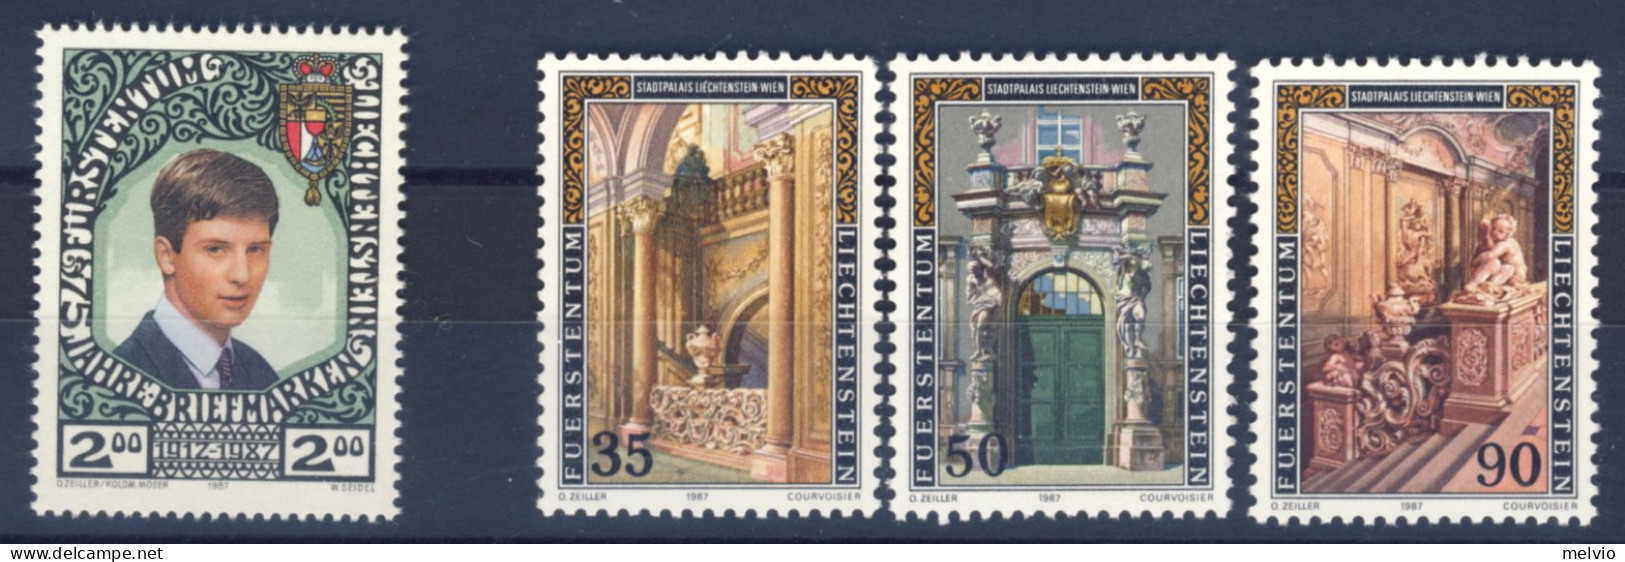 1987-Liechtenstein (MNH=**) 2 Serie 4 Valori Anniversario Francobolli, Palazzo M - Neufs